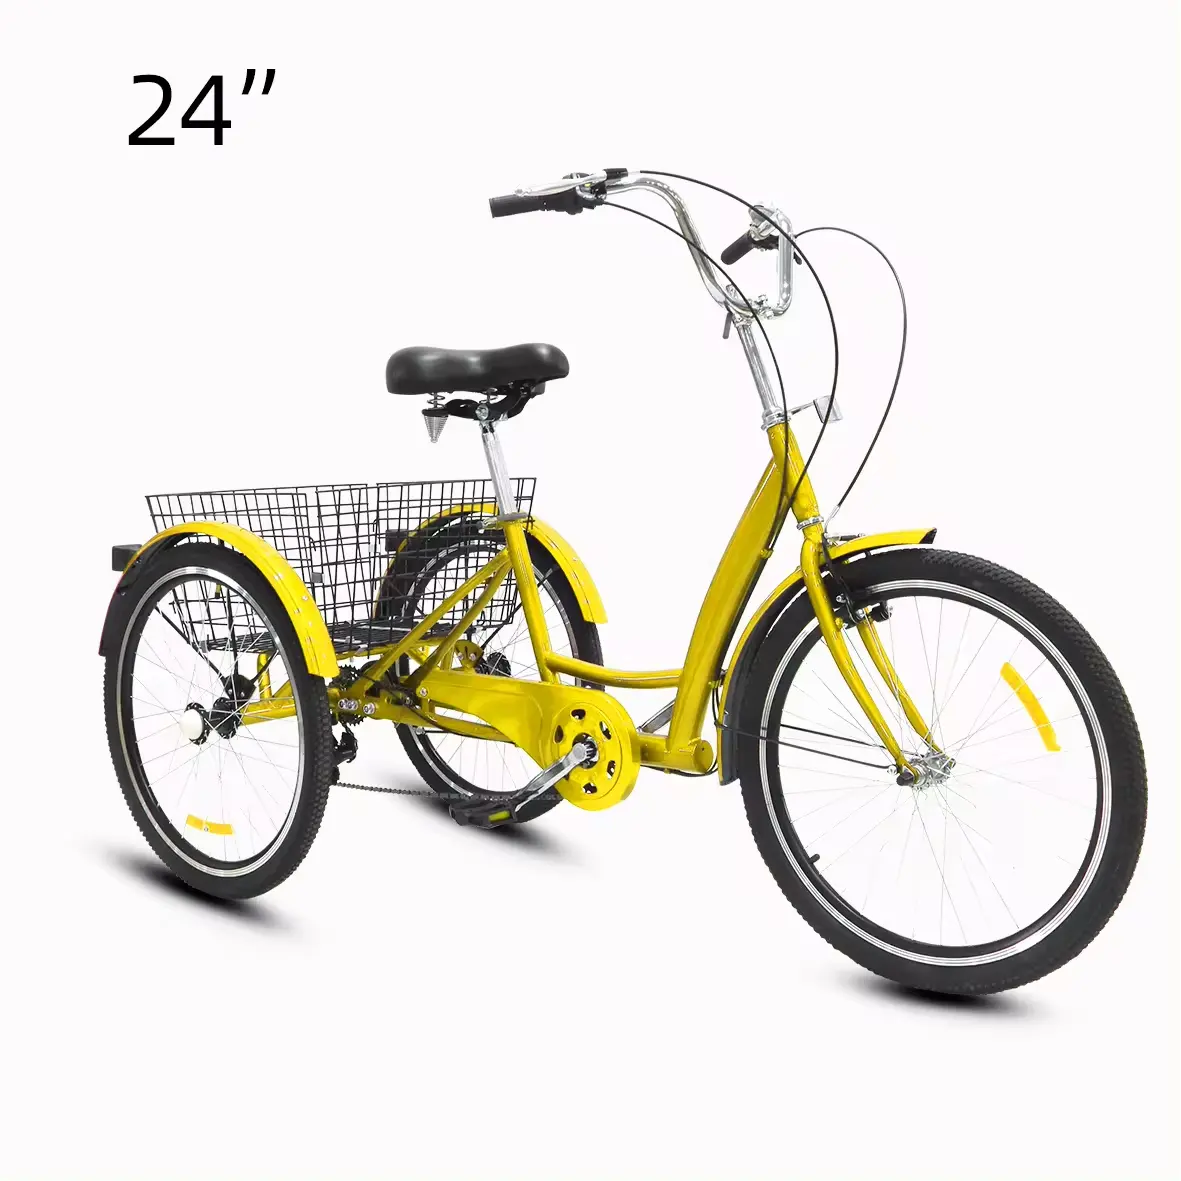 Venta caliente de fabricante al por mayor, triciclo de carga personalizado para ancianos, llanta de rueda de aleación, bicicleta triciclo con carga pesada